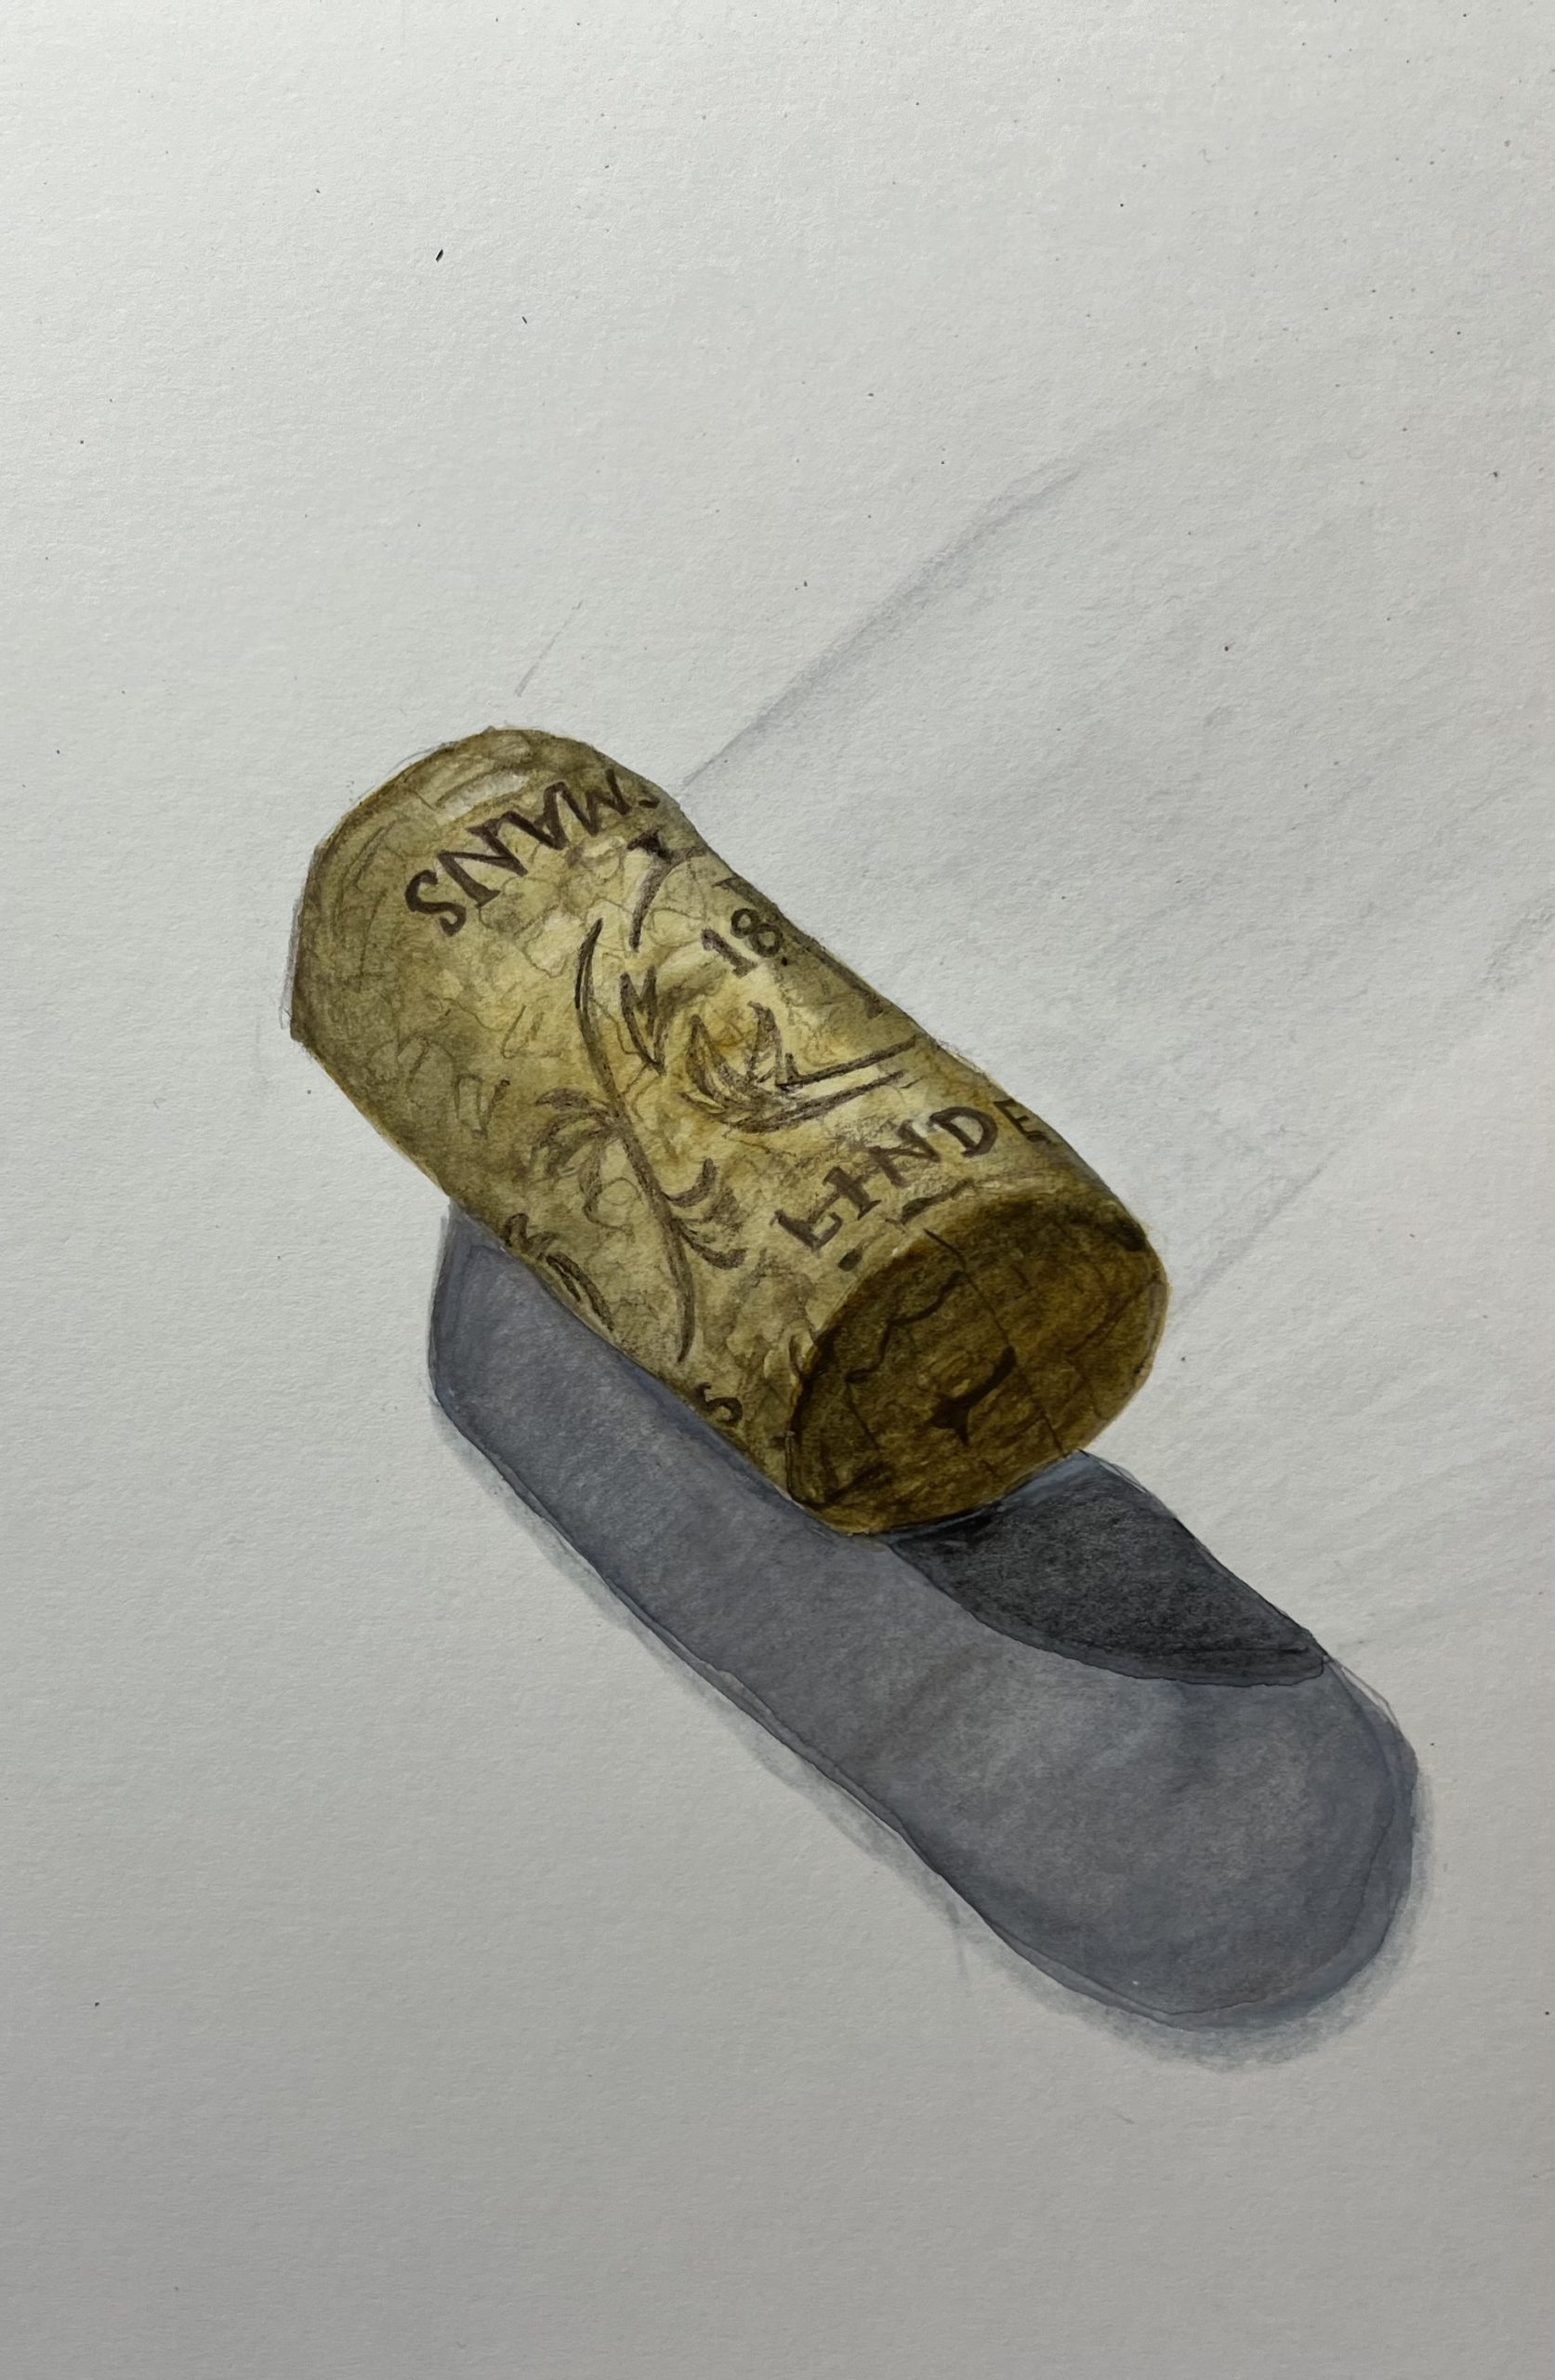 Bottle Cork, study in realism